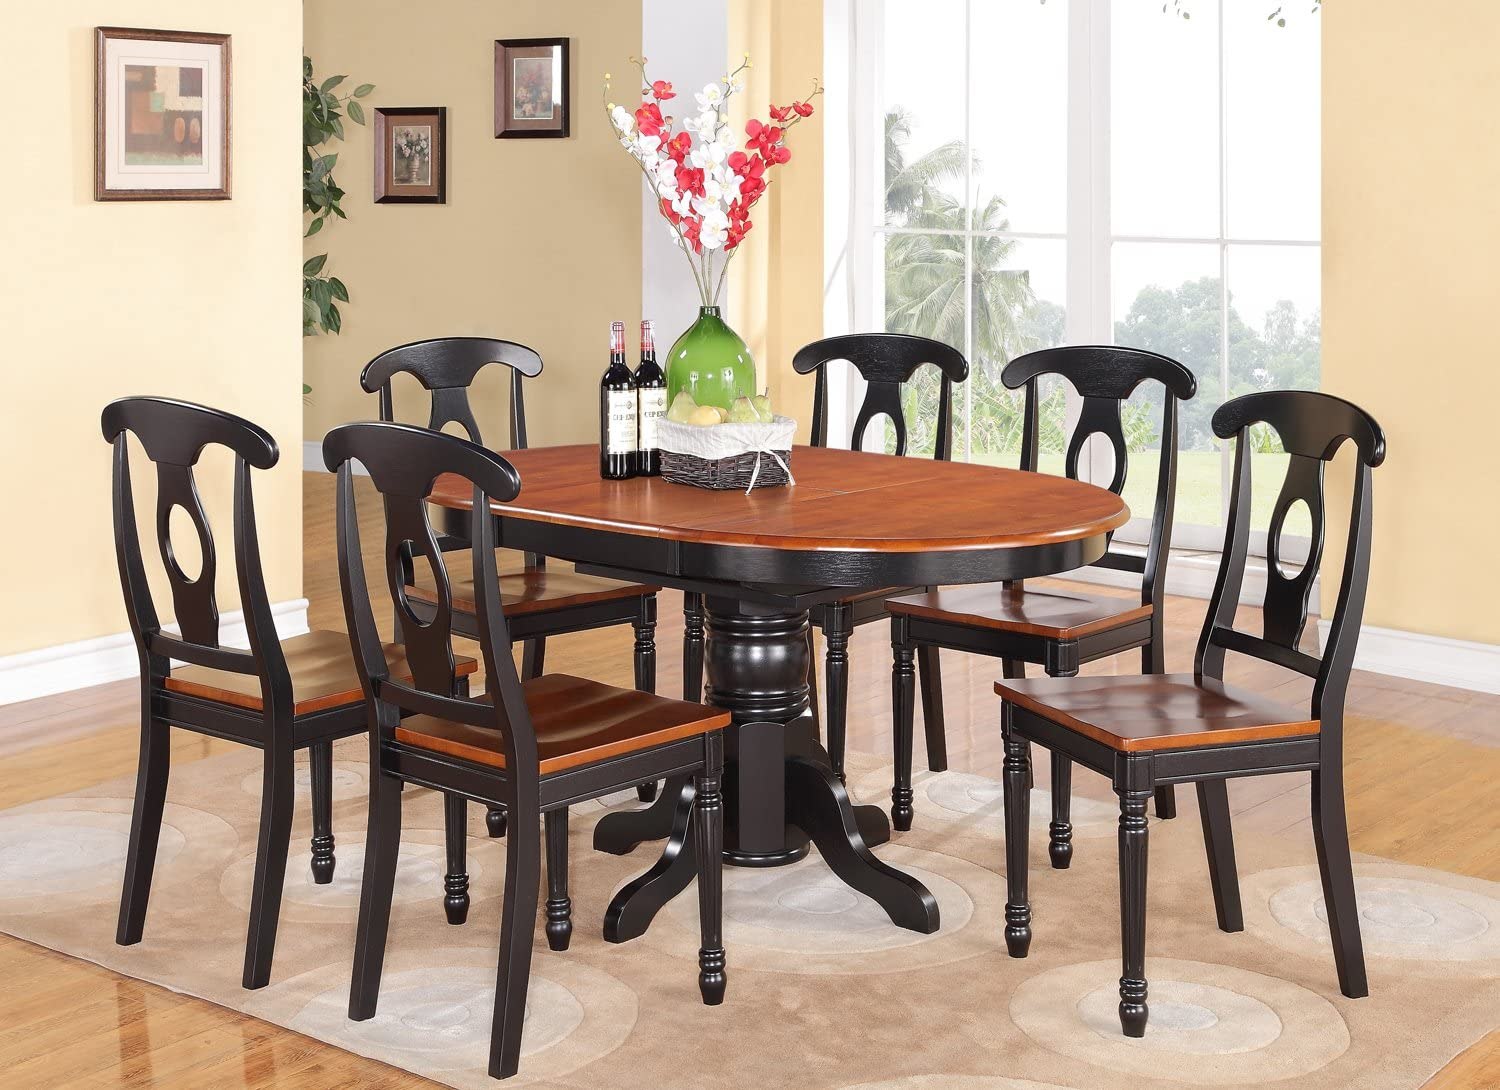 Обеденный комплект стол стулья. Кухонный стол и стулья. Кухонные столы и стулья для кухни. Красивые кухонные столы и стулья. Кухонный набор стол и стулья.